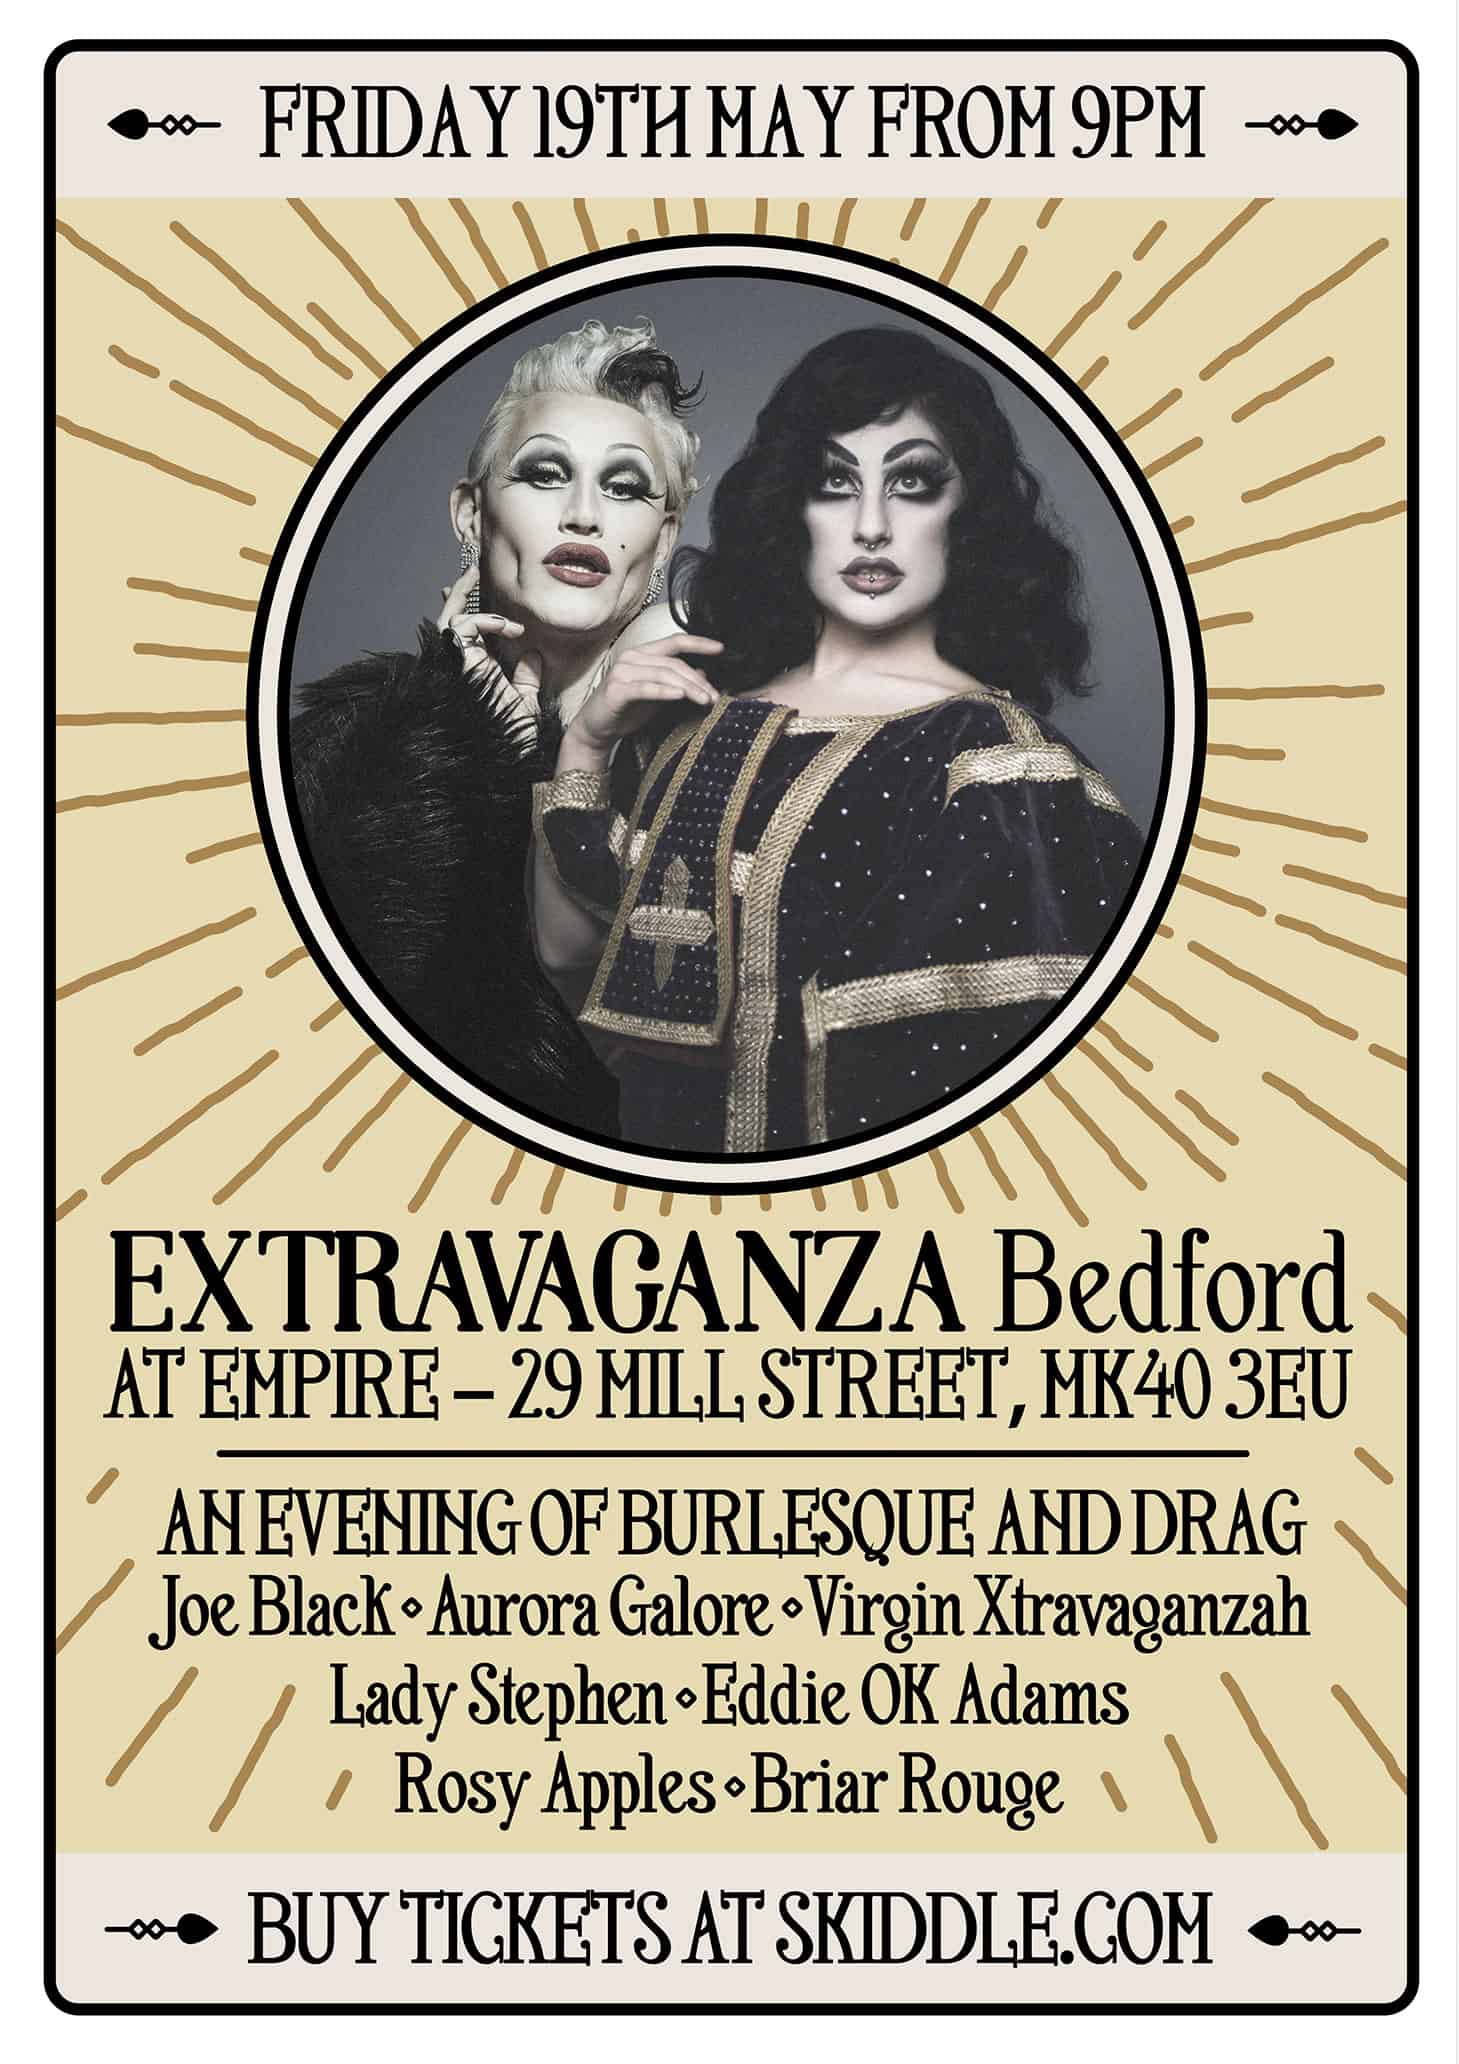 Extravaganza Bedford Poster